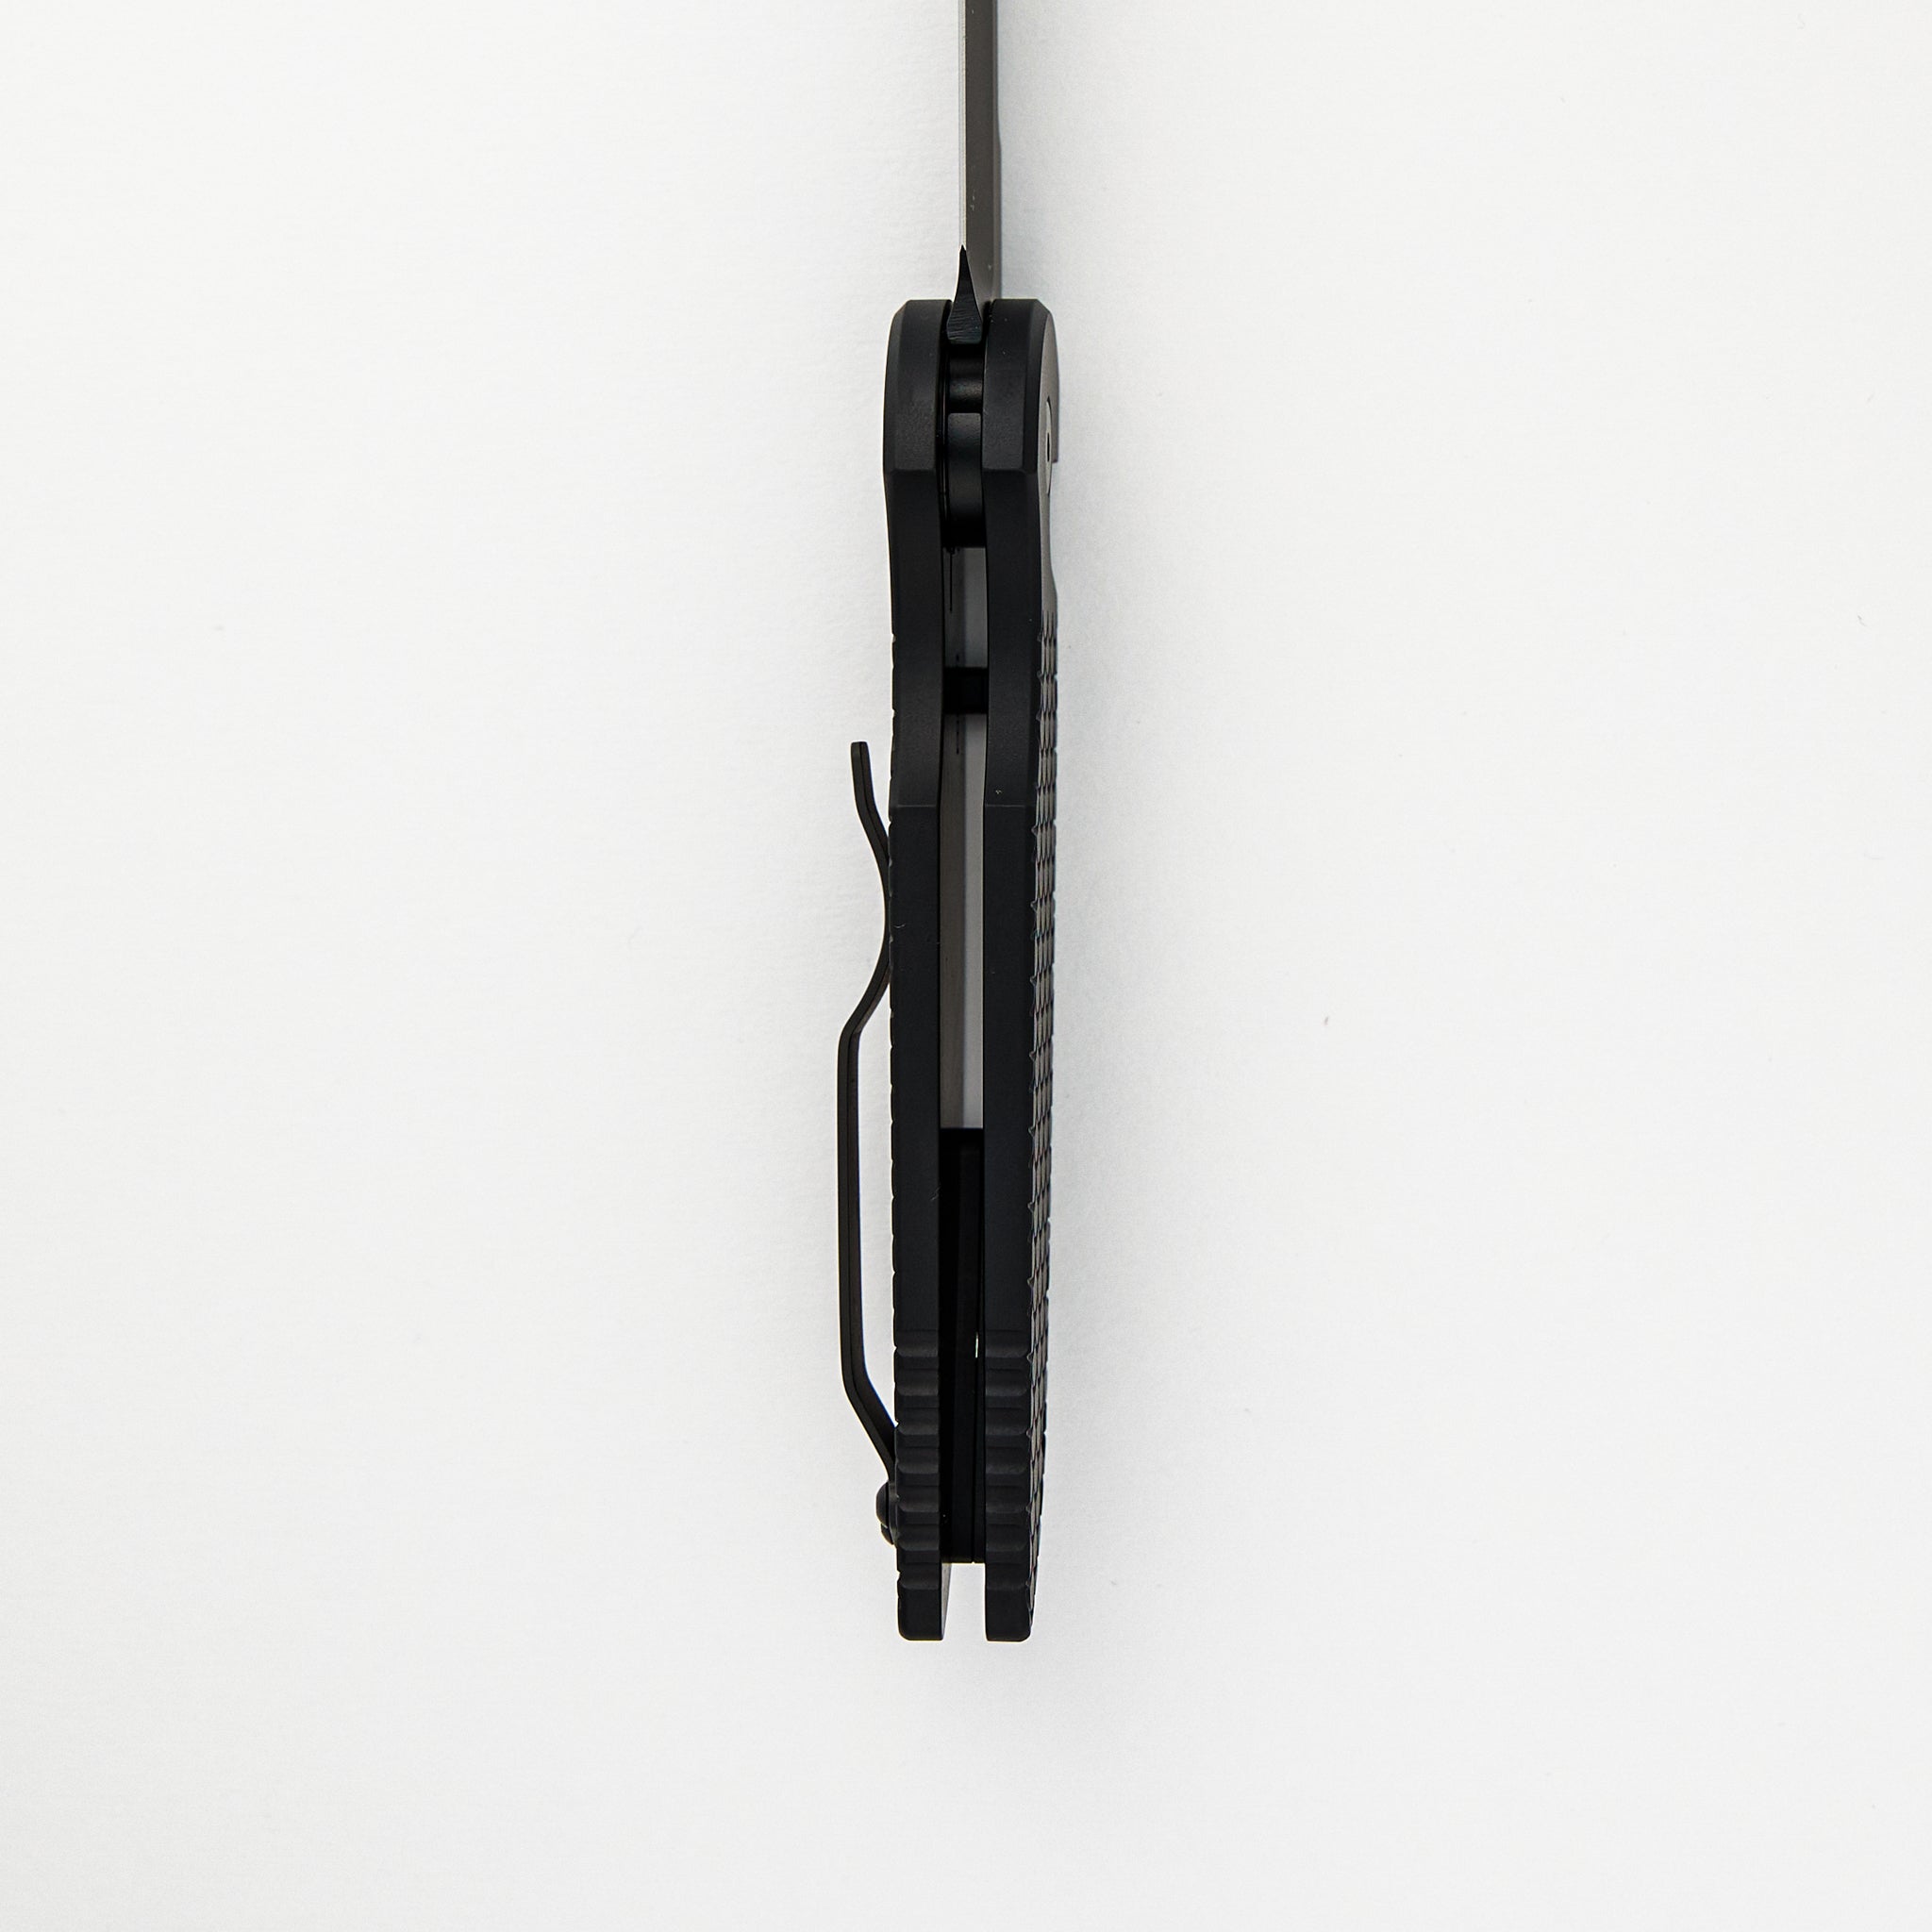 Pro-Tech Knives TR-3 X1 Operator - Black "Fish Scale" Handle, Black Sterile Blade, Tritium Button